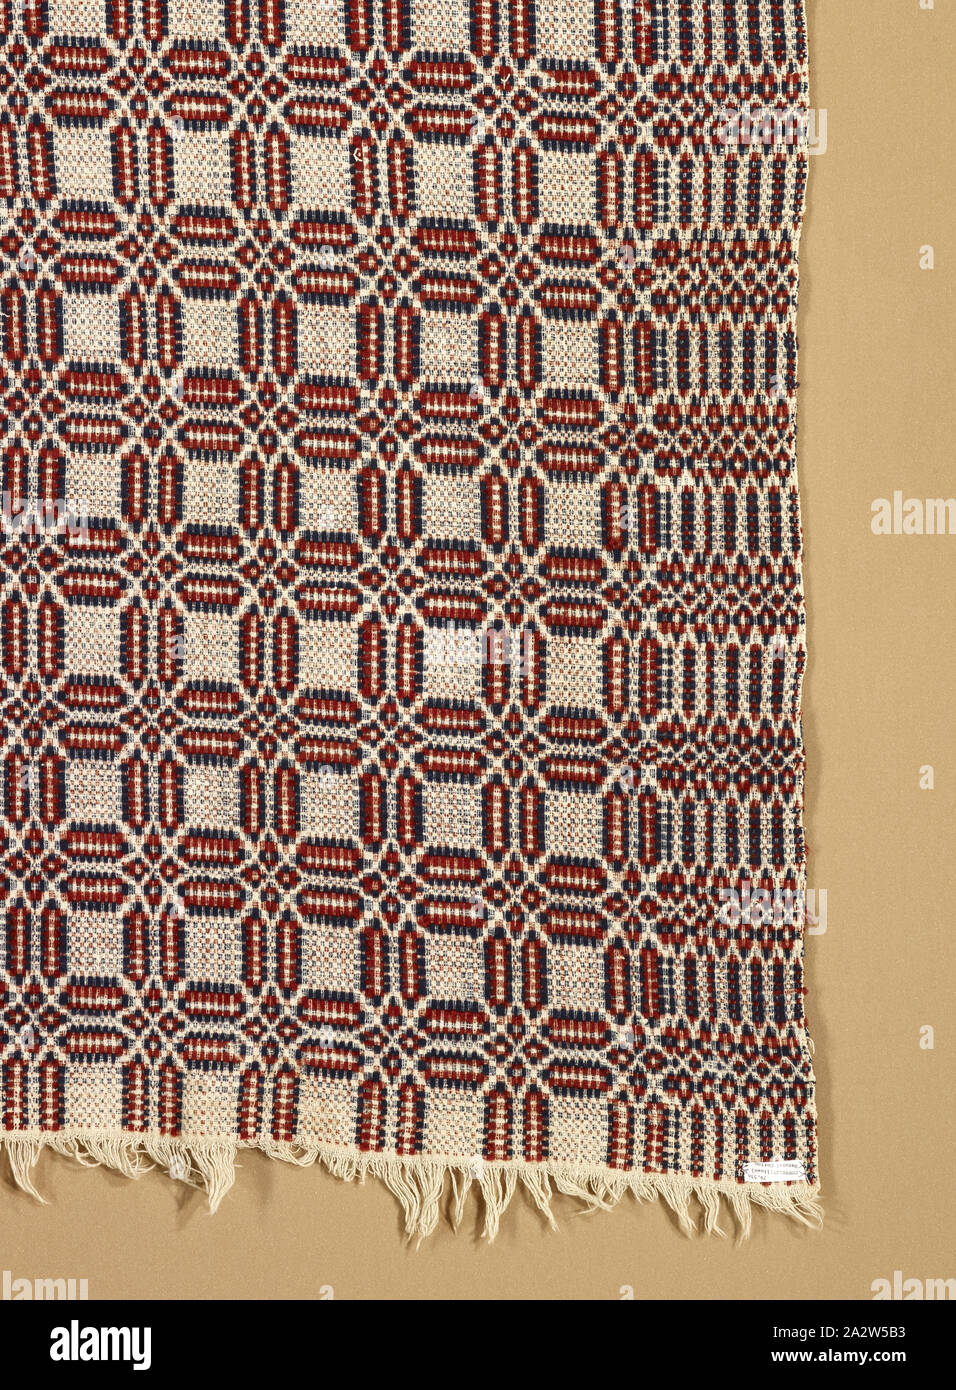 Couvre-lit couvre-lit (dépassé), Inconnu, 1800-1850, le coton et la laine, 95 x 63 in. (Sans marge) 97 x 63 in. (Avec fringe), cuisine américaine, du textile et de l'Arts de la mode Banque D'Images